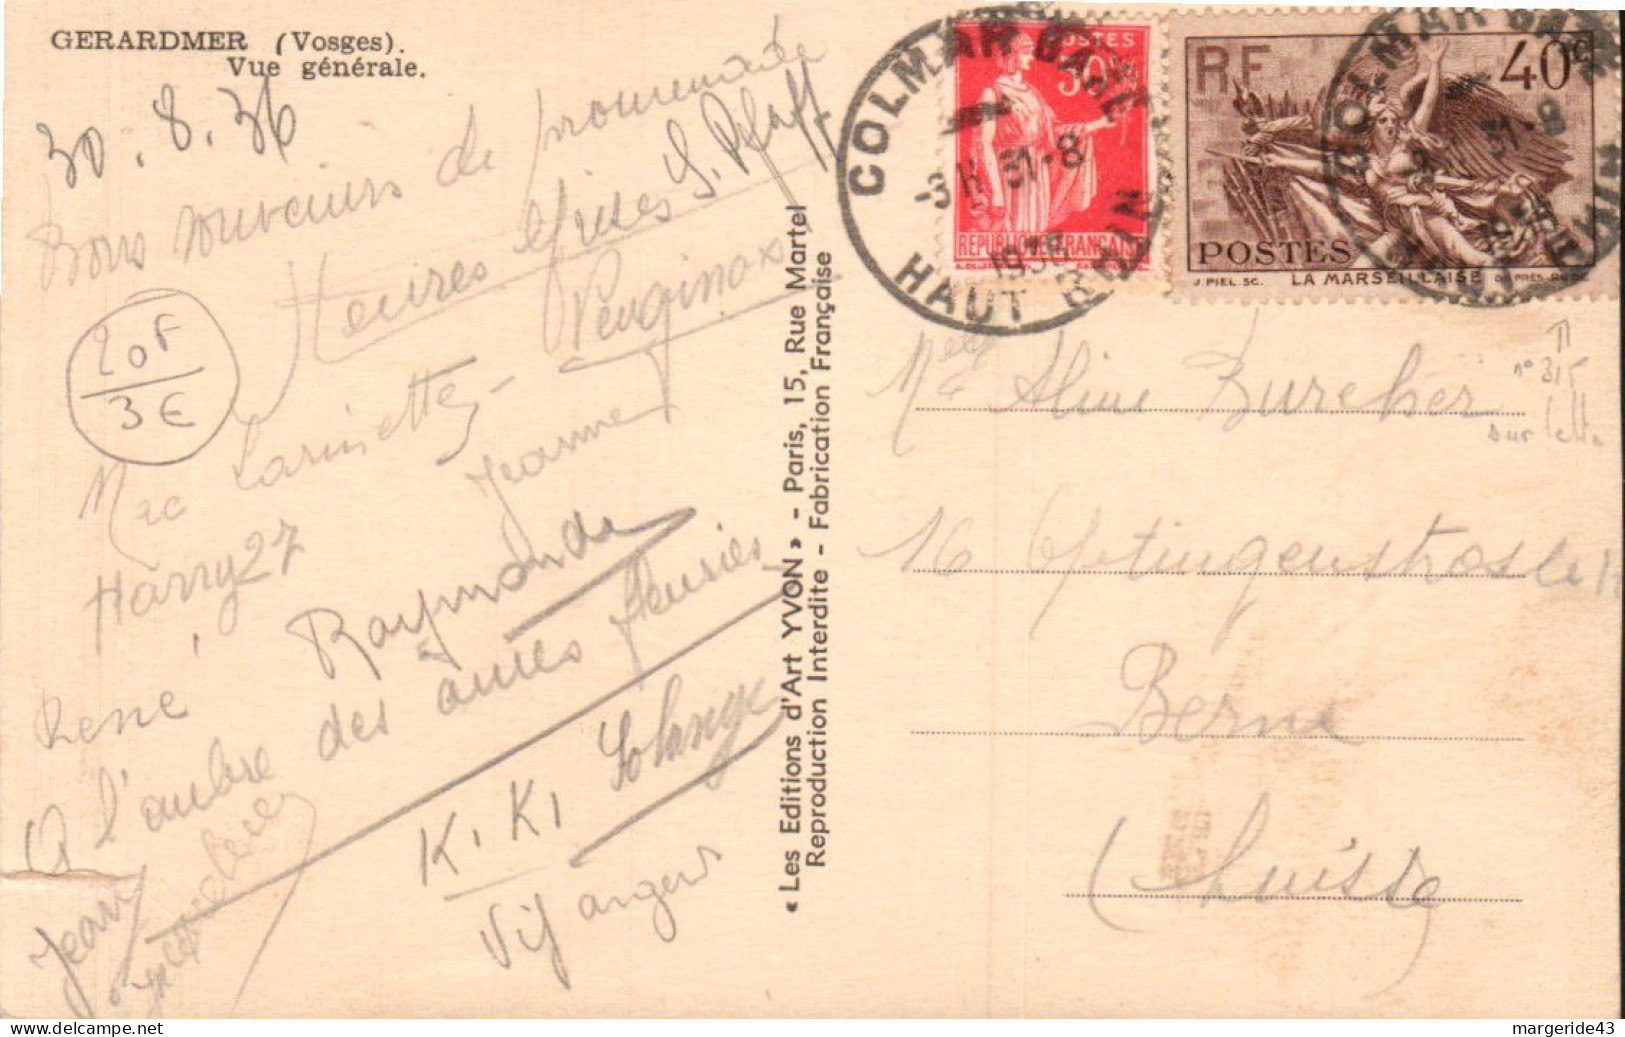 AFFRANCHISSEMENT COMPOSE SUR CARTE DE COLMAR GARE 1936 - Tariffe Postali